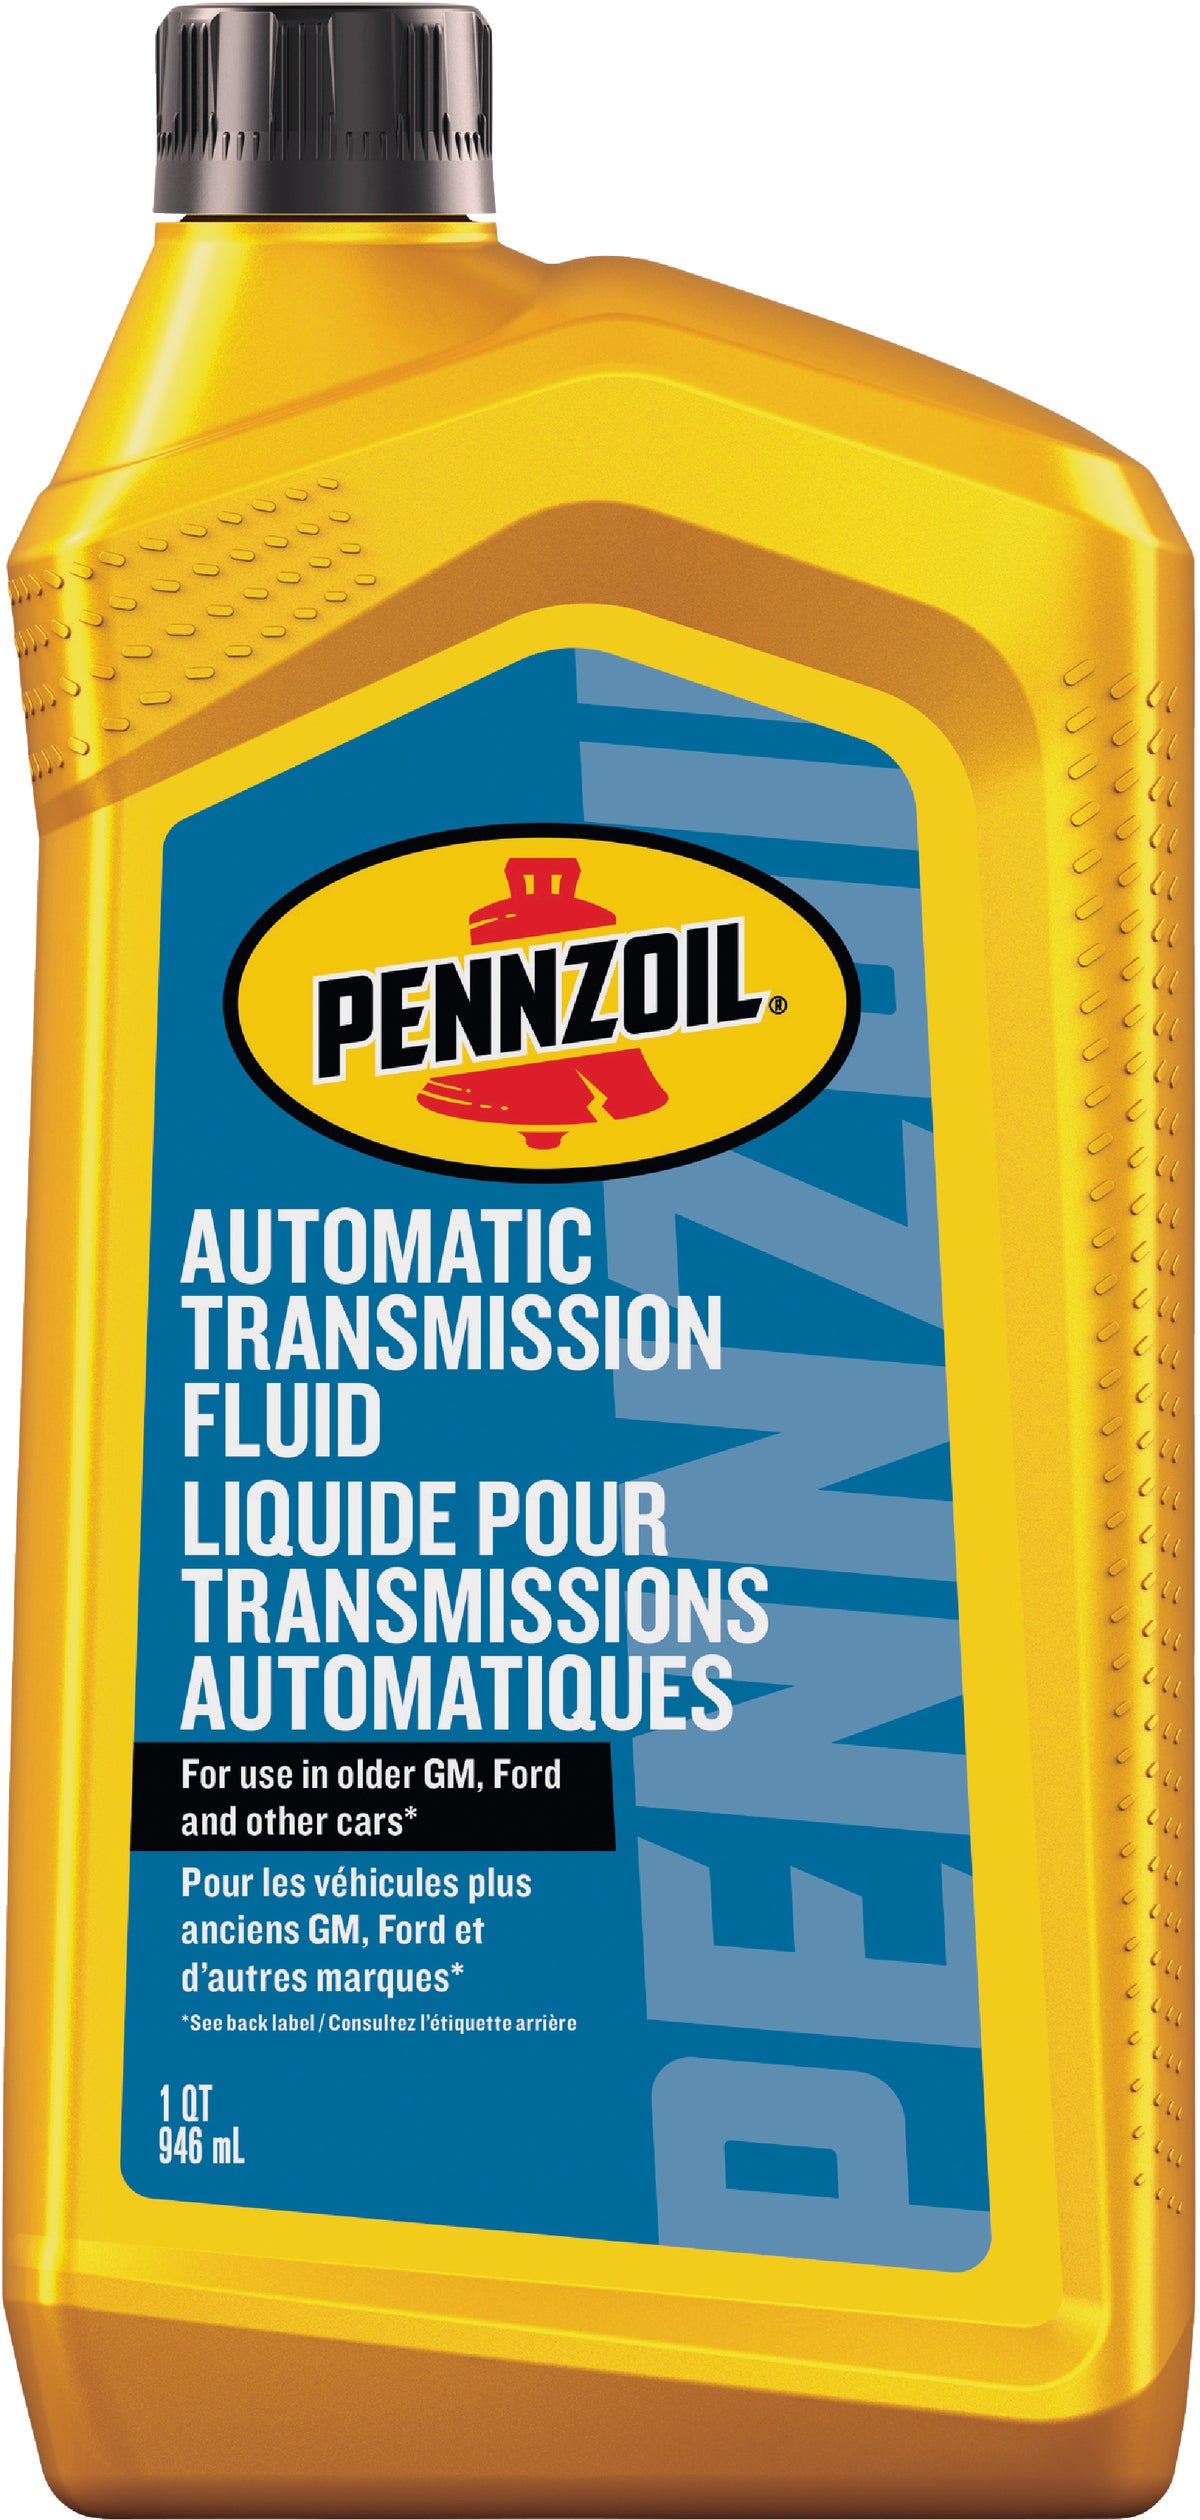 Pennzoil 1 Quart Platinum Dexron-VI Automatic Transmission Fluid